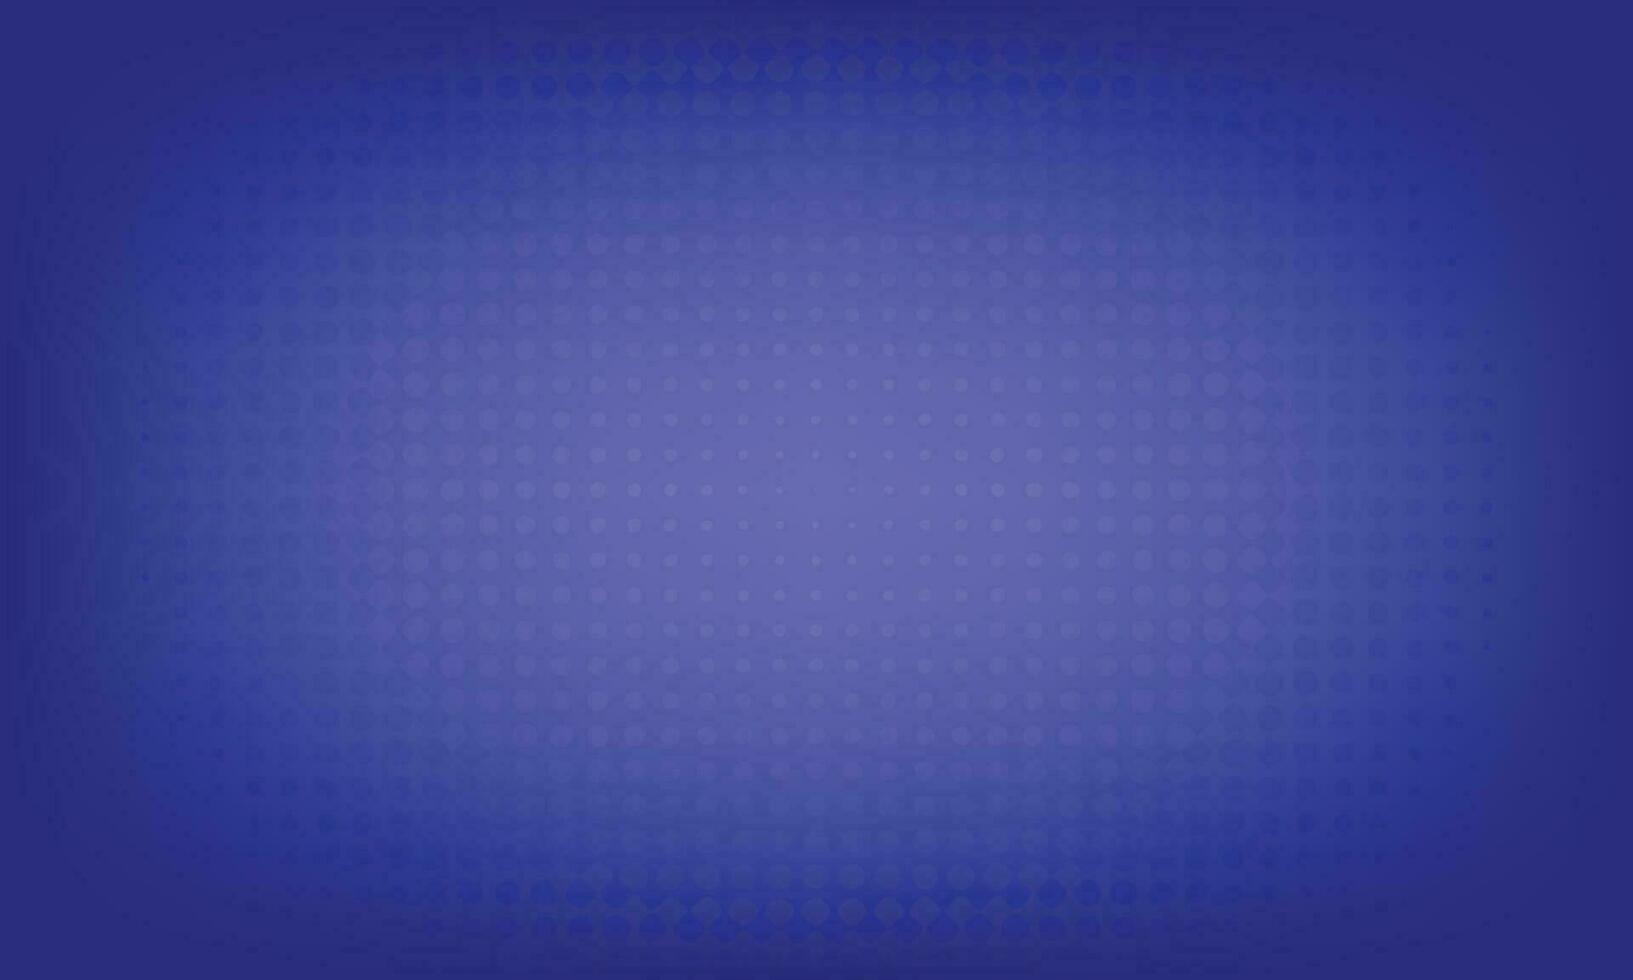 Hintergrund der kreativen Vorlage für Web-Banner mit dunkelblauem Farbverlauf vektor